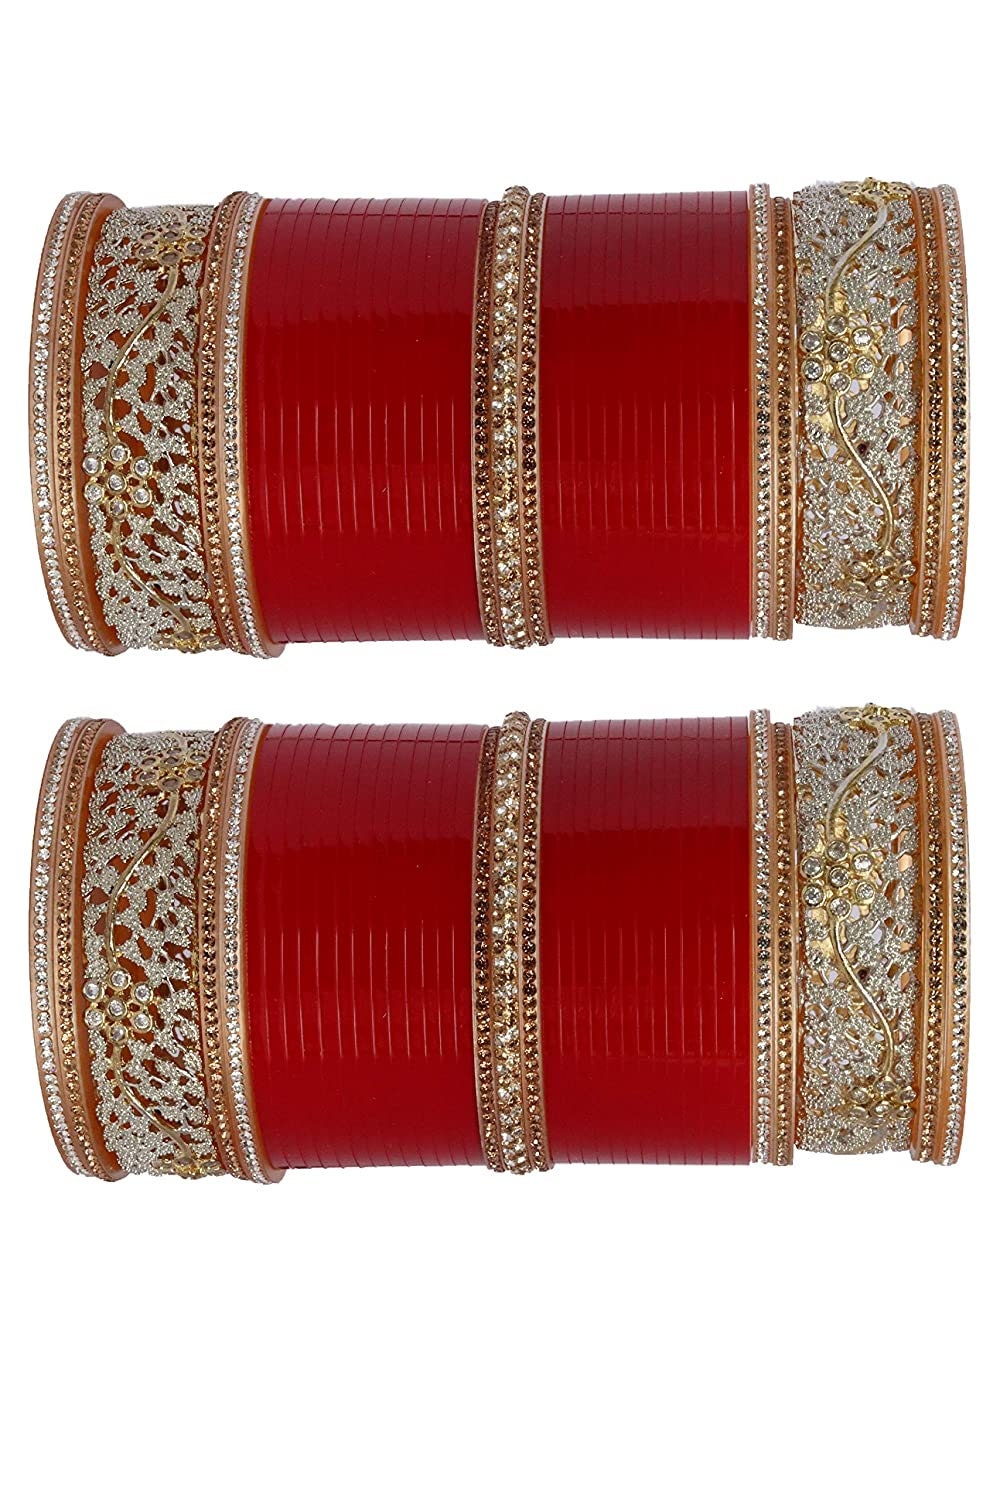 Traditional Bridal chura. punjabi traditional chuda. wedding bangles, Punjabi Choora, choora. bridal bangles, Chura, chuda set, chura set